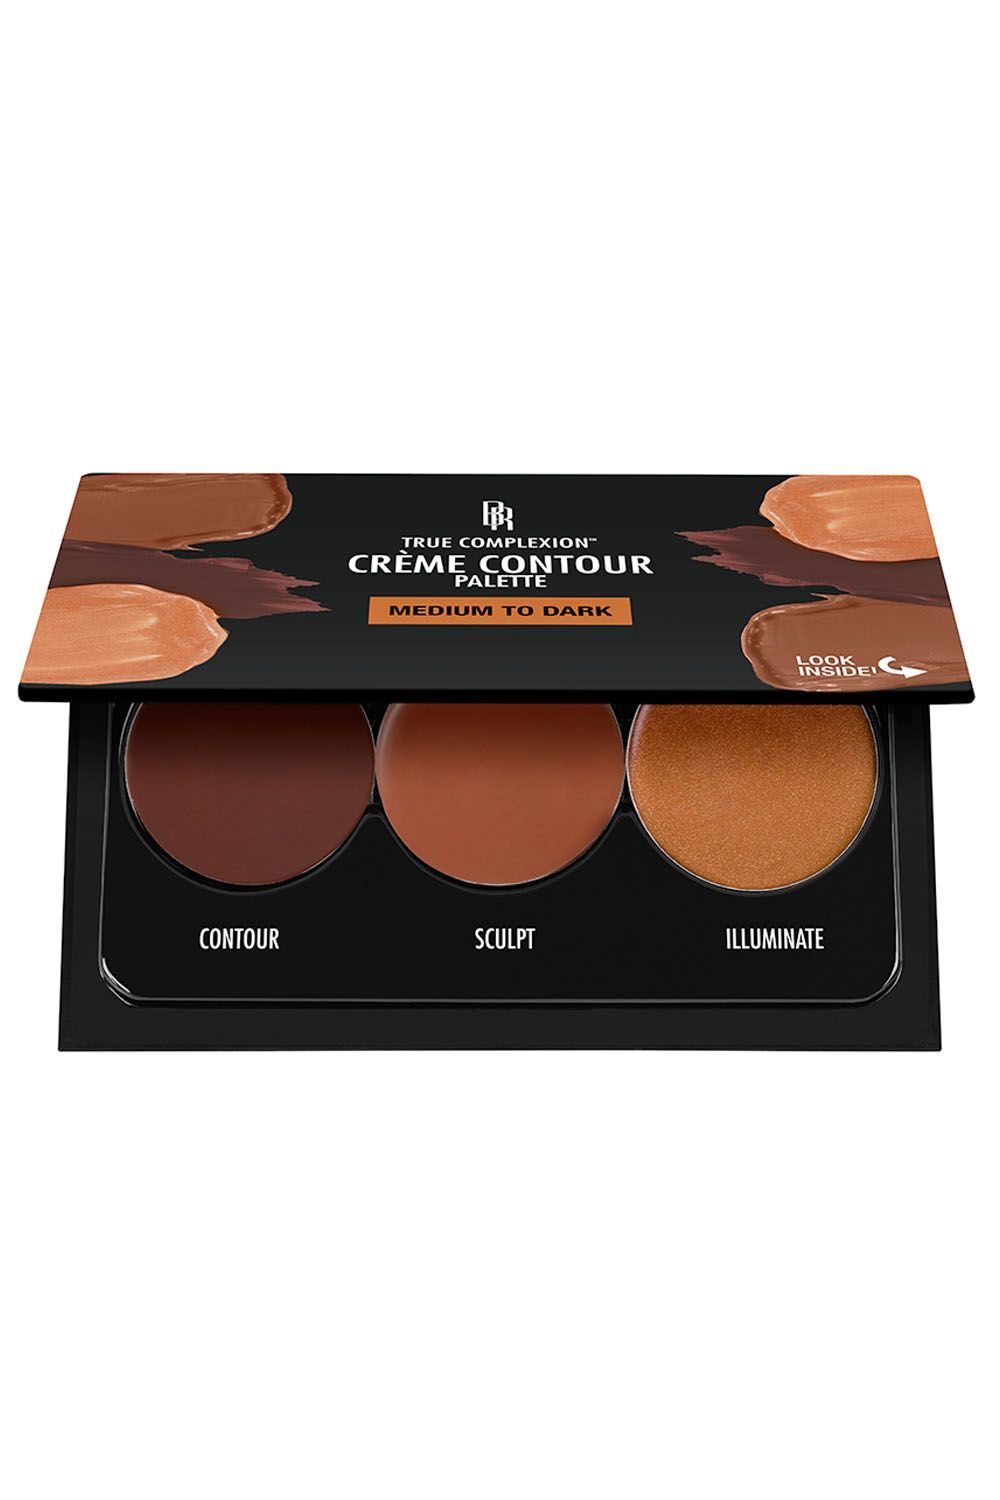 professional contour makeup kits